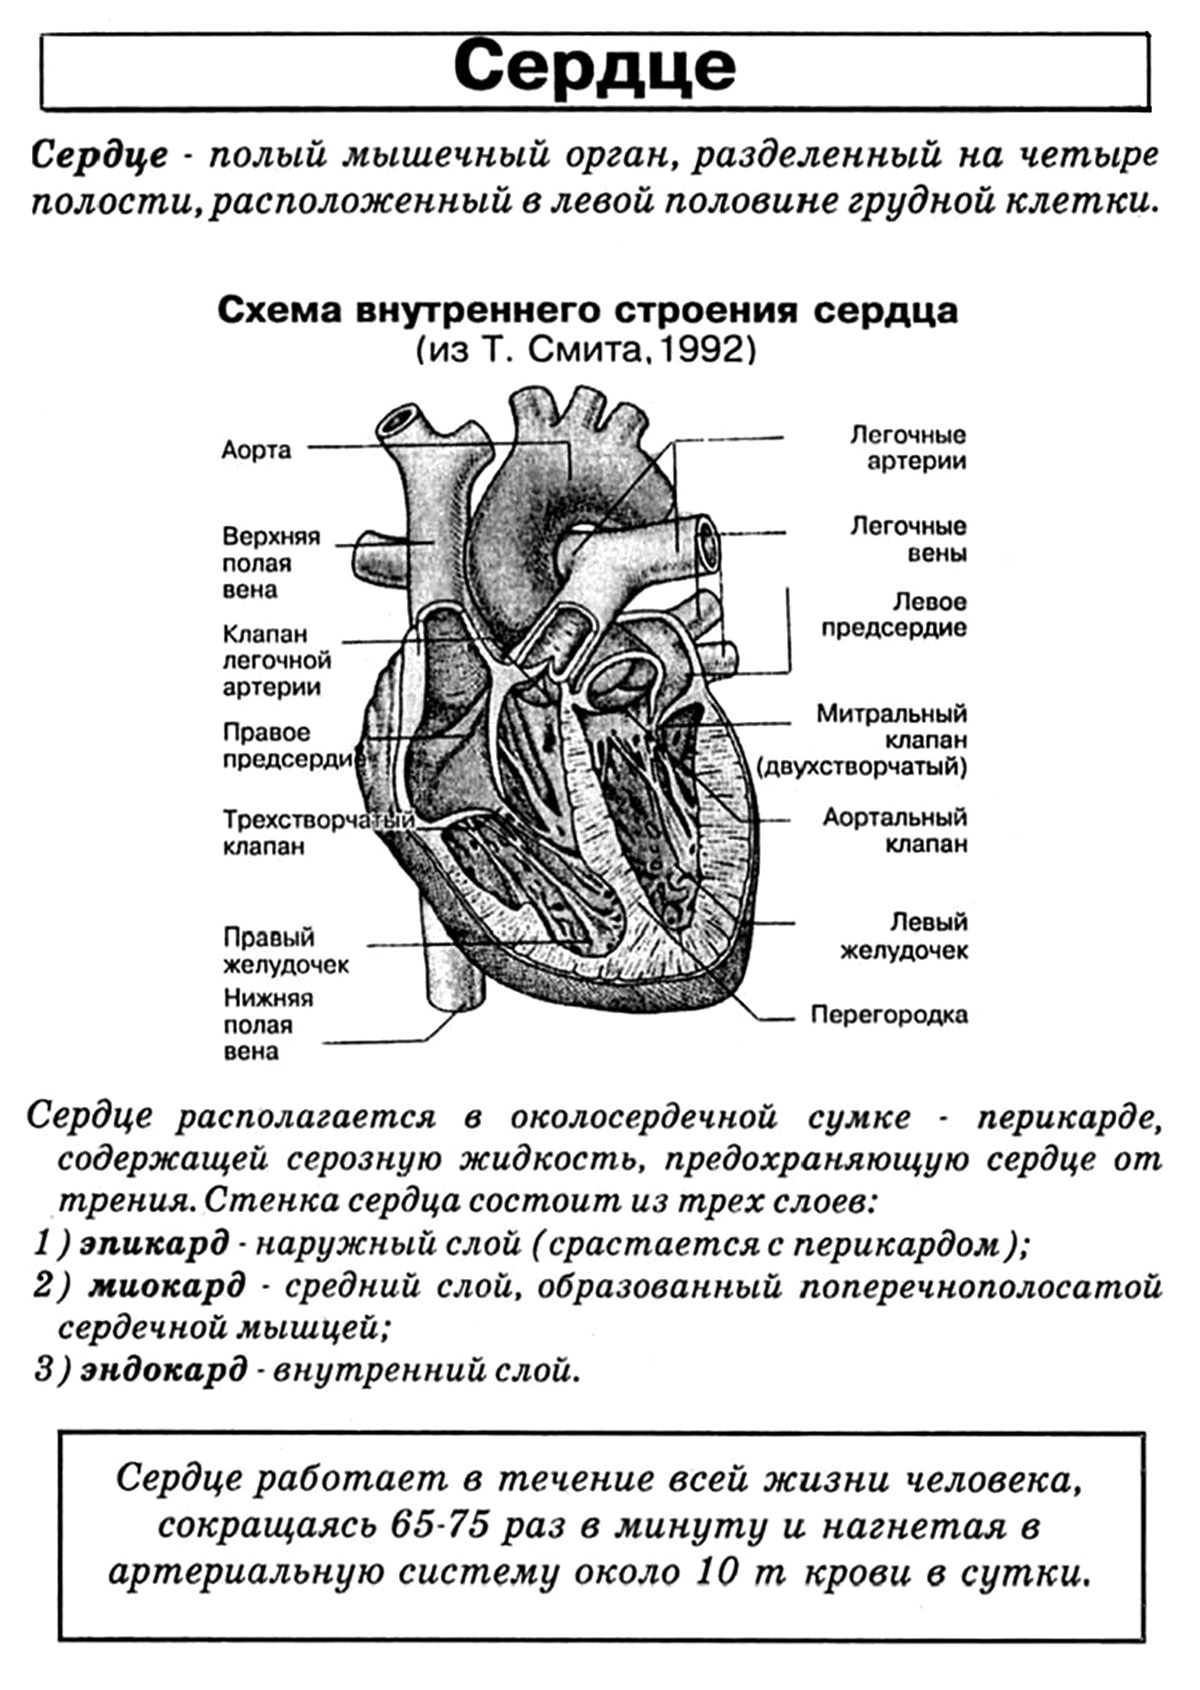 Биология человека егэ. ЕГЭ биология анатомия строение сердца. Сердце схема строения анатомия. Строение сердца человека ЕГЭ биология. Строение сердца таблица биология.